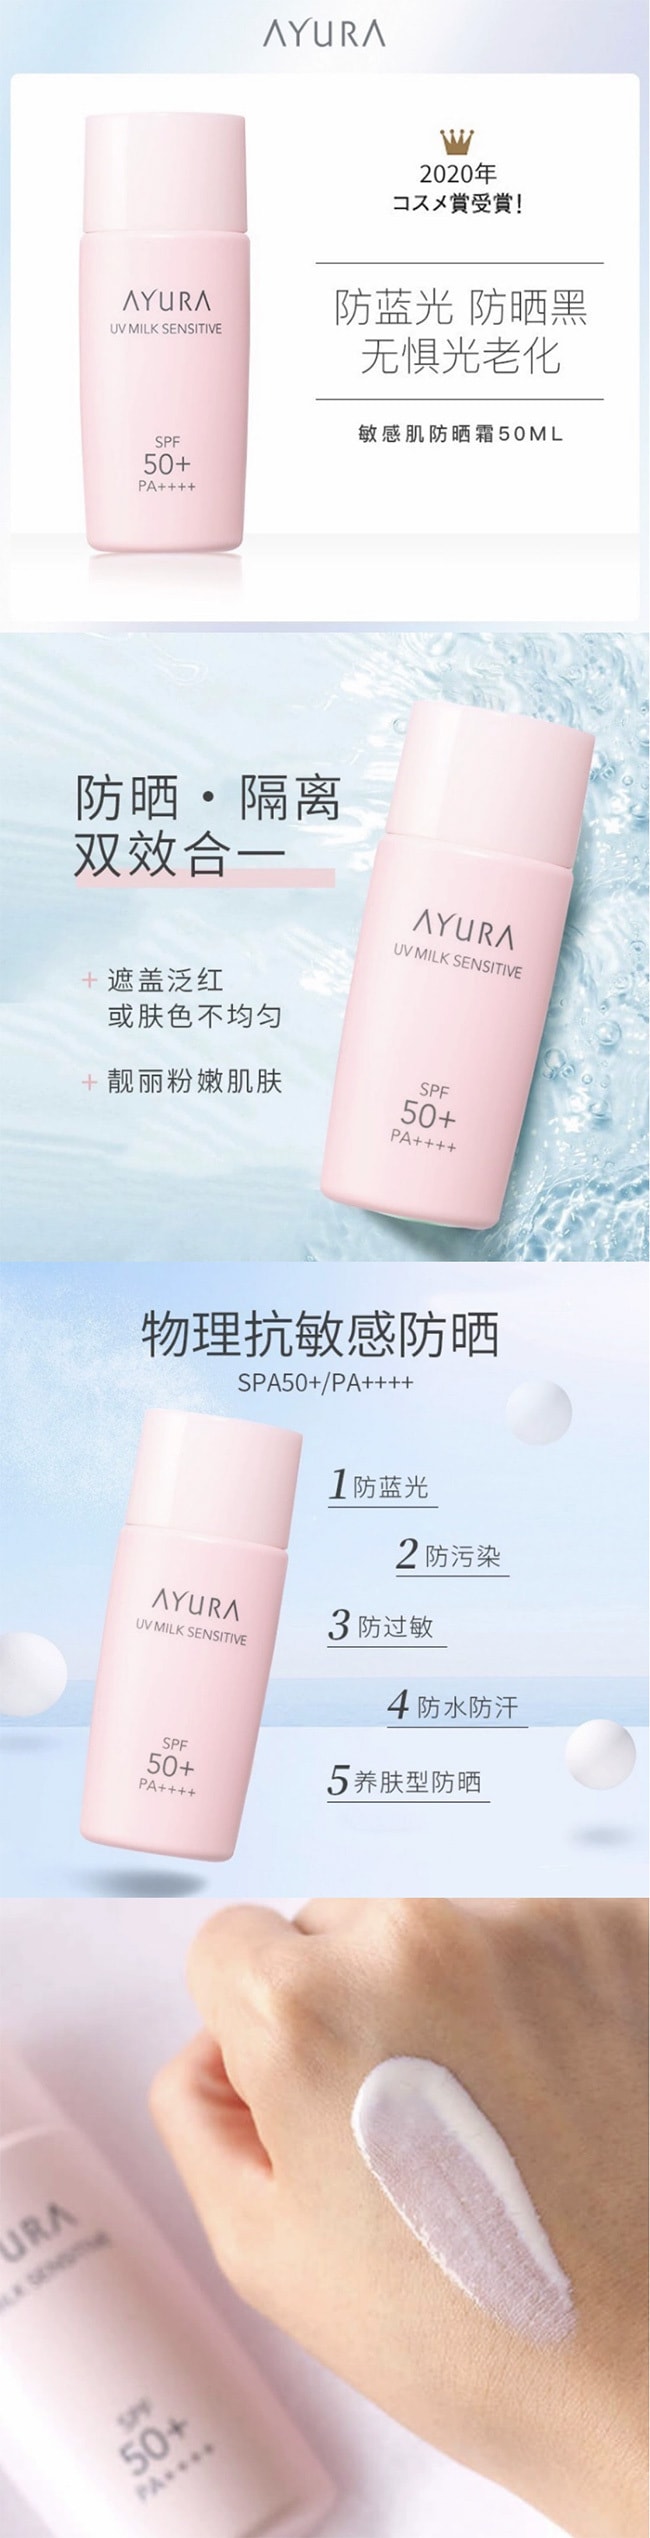 【日本直邮】AYURA 敏感肌可用 高保湿防晒乳 SPF50+/PA++++ 50ml